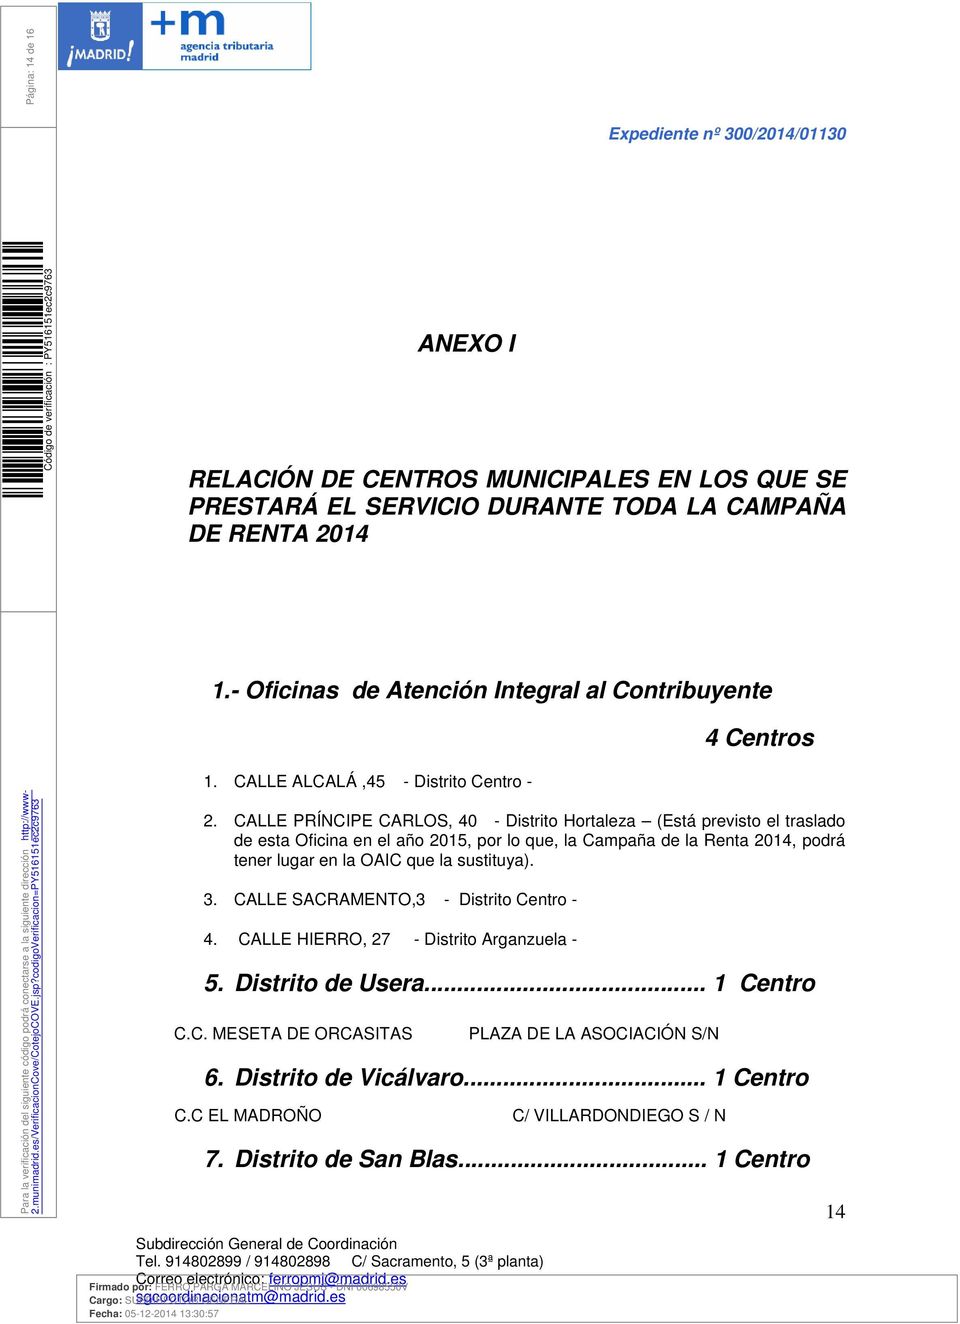 CALLE PRÍNCIPE CARLOS, 40 - Distrito Hortaleza (Está previsto el traslado de esta Oficina en el año 2015, por lo que, la Campaña de la Renta 2014, podrá tener lugar en la OAIC